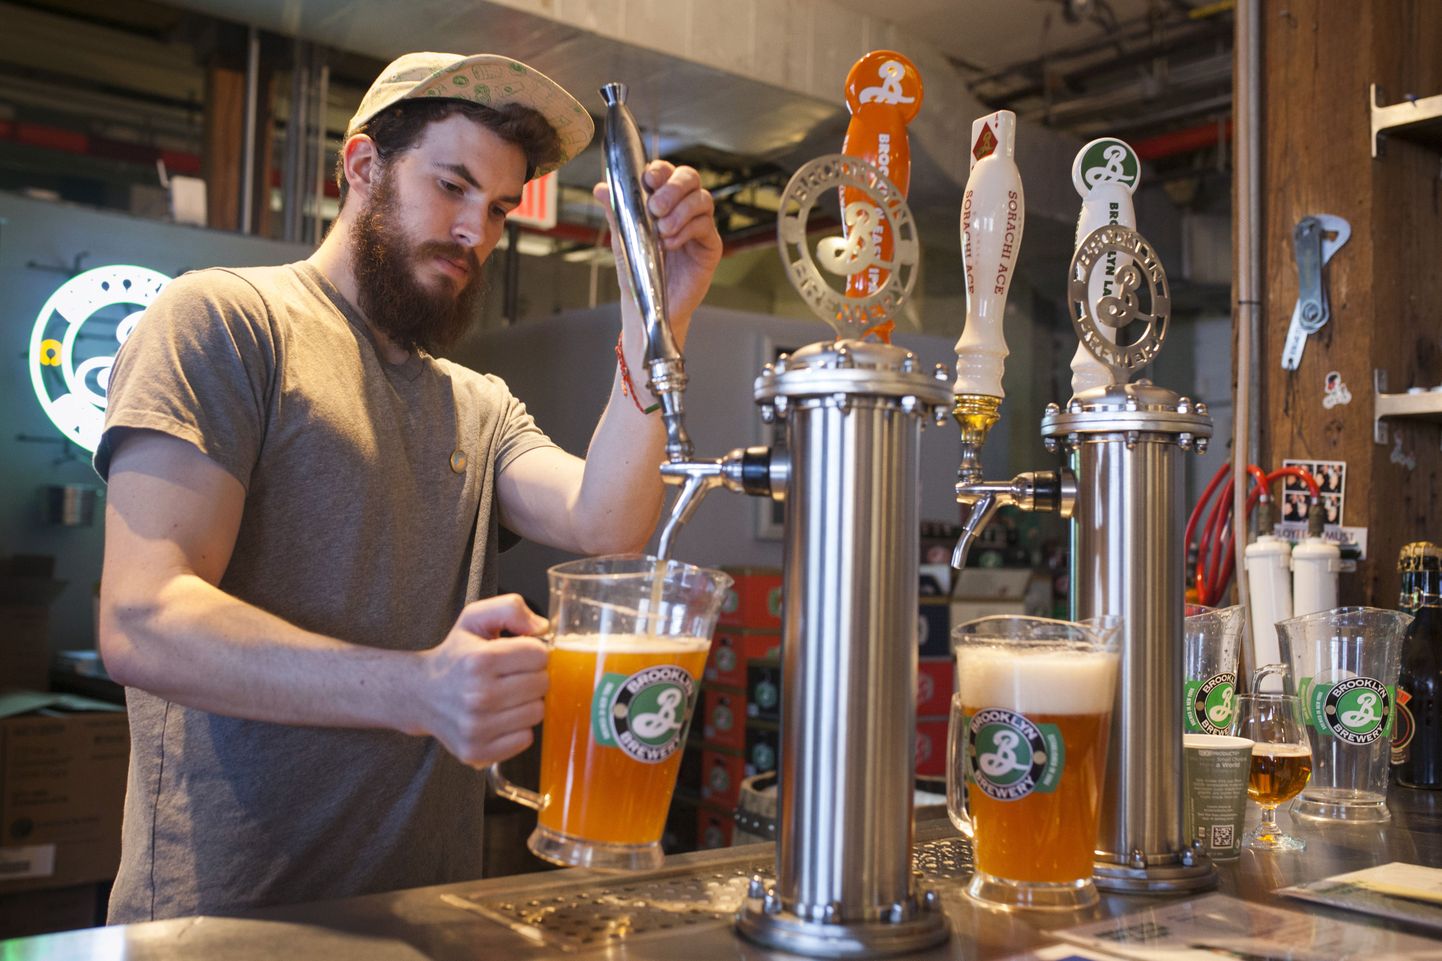 Õlledegustatsiooni giid laseb New Yorgis asuva Brooklyn Brewery pruulikoja maitsmisruumis õlut kannudesse.